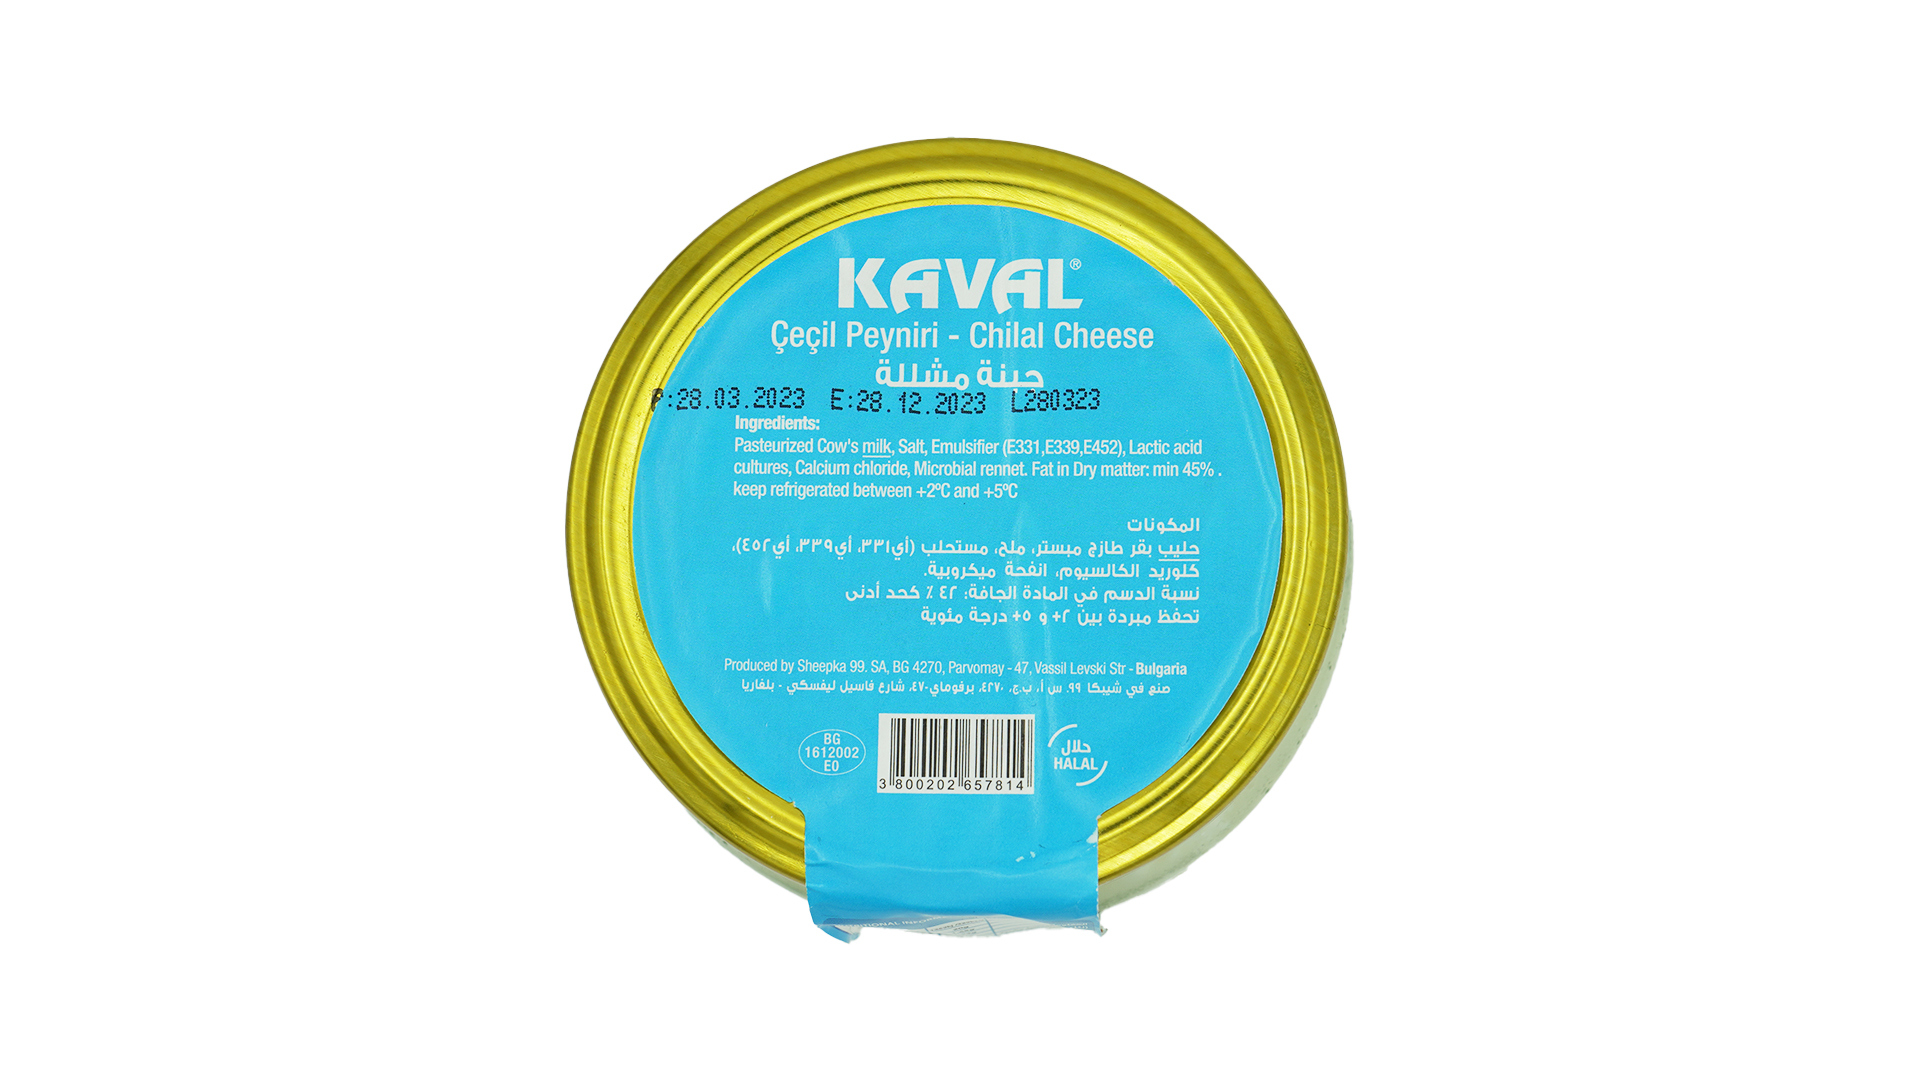 Kaval cecil peyniri chilal cheese 400g 1